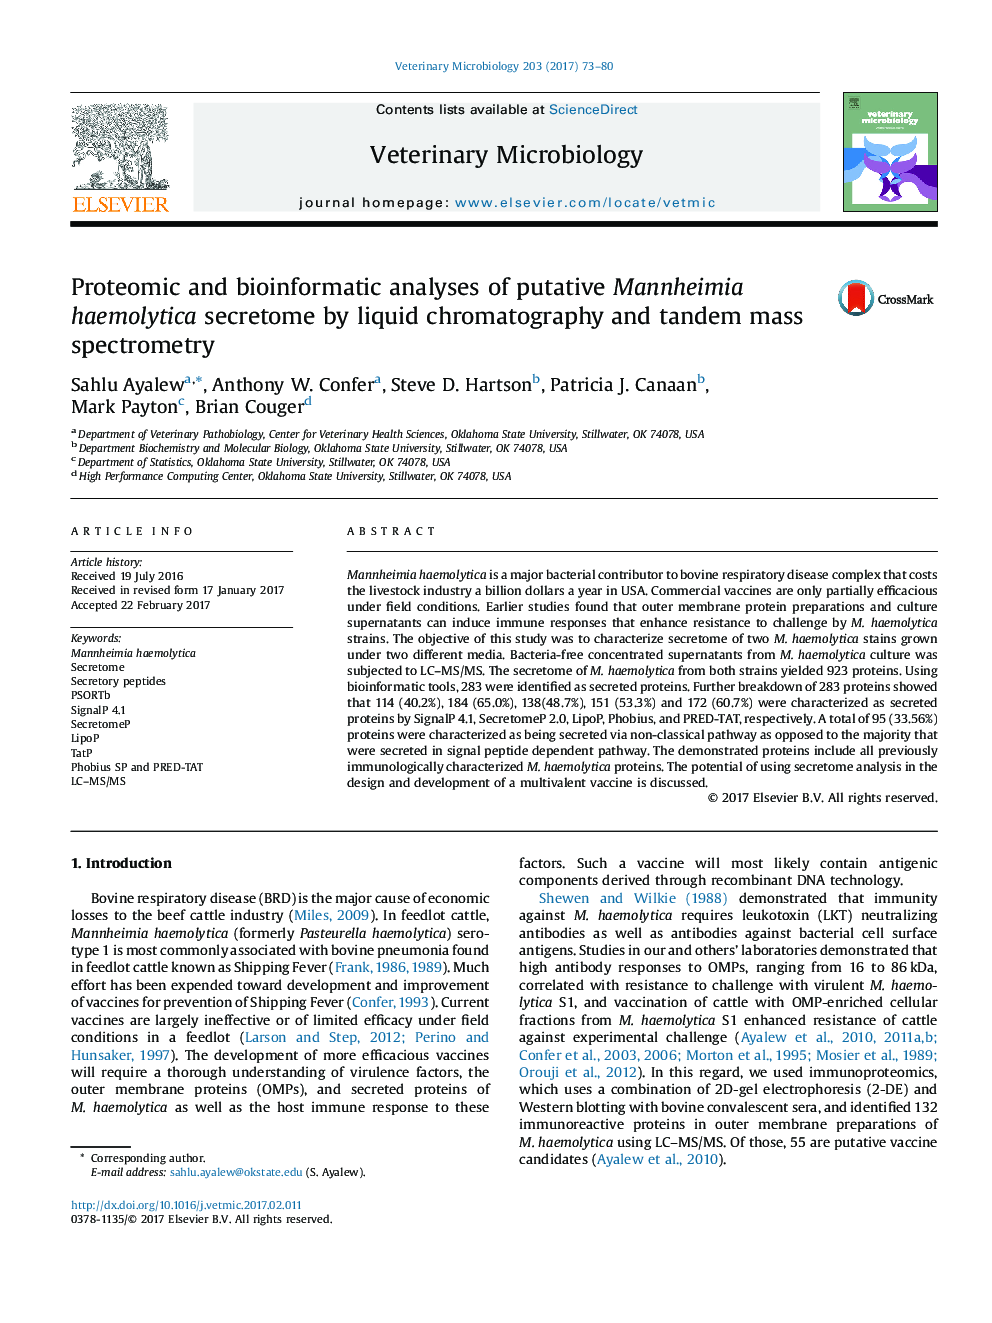 تجزیه پروتئومیک و بیوانفورماتیک از مخچه منومیمی هیمولیتیکا با استفاده از کروماتوگرافی مایع و طیف سنجی جرم دو طرفه 